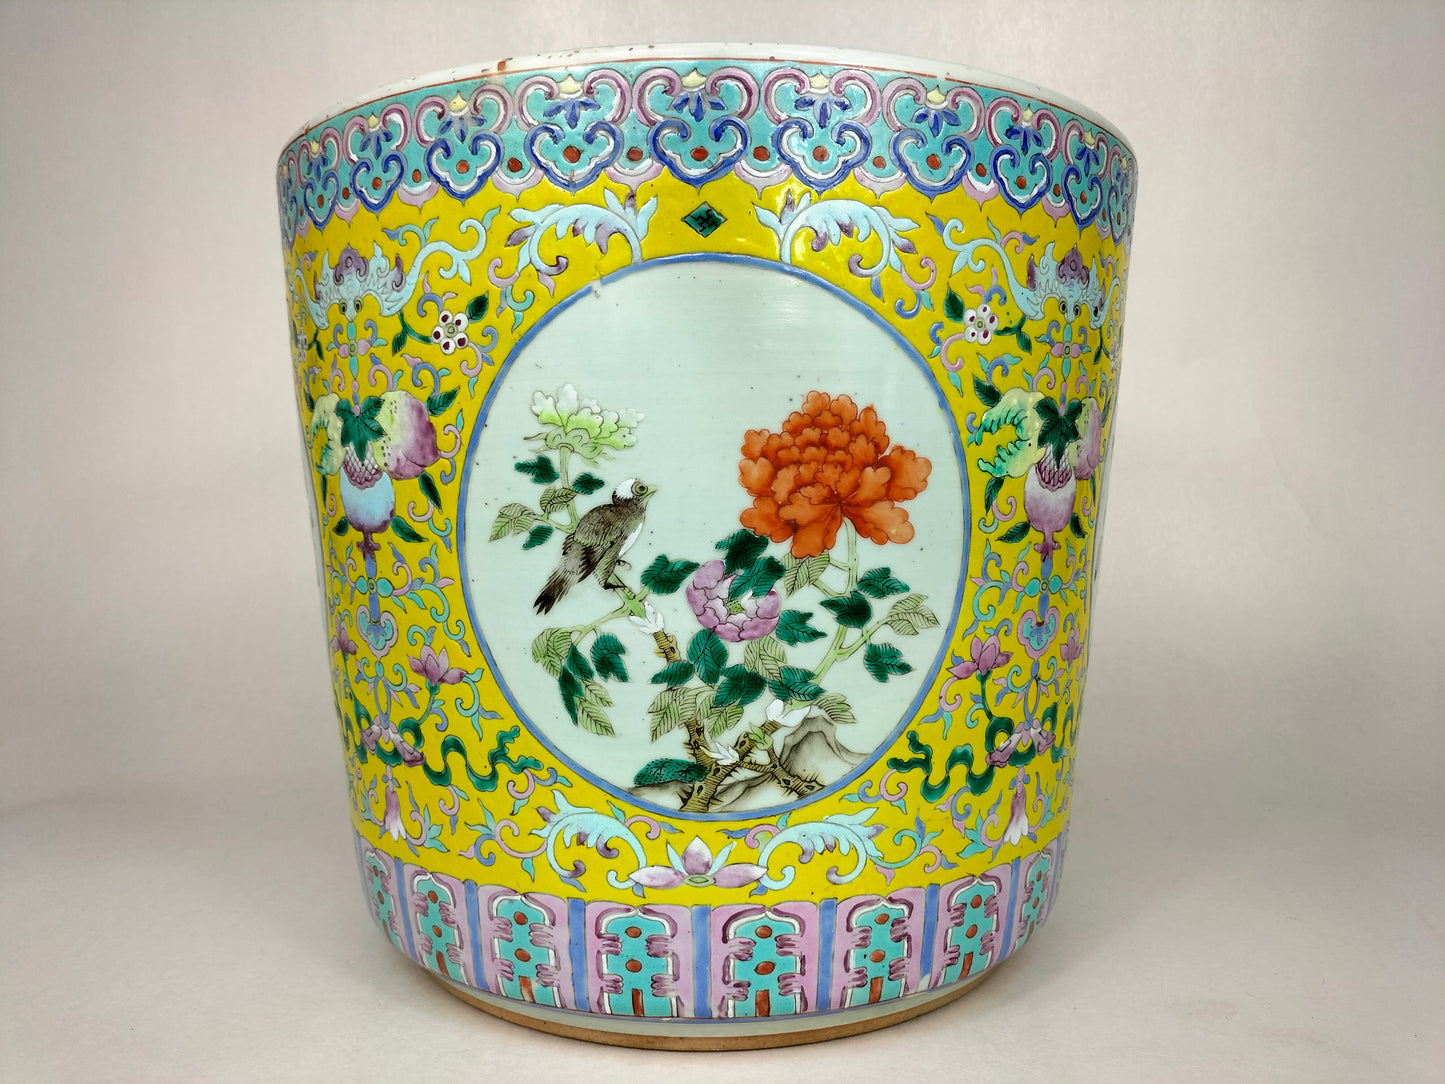 إناء زهور كبير عتيق الطراز مزين بالورود // أسرة تشينغ - القرن التاسع عشر